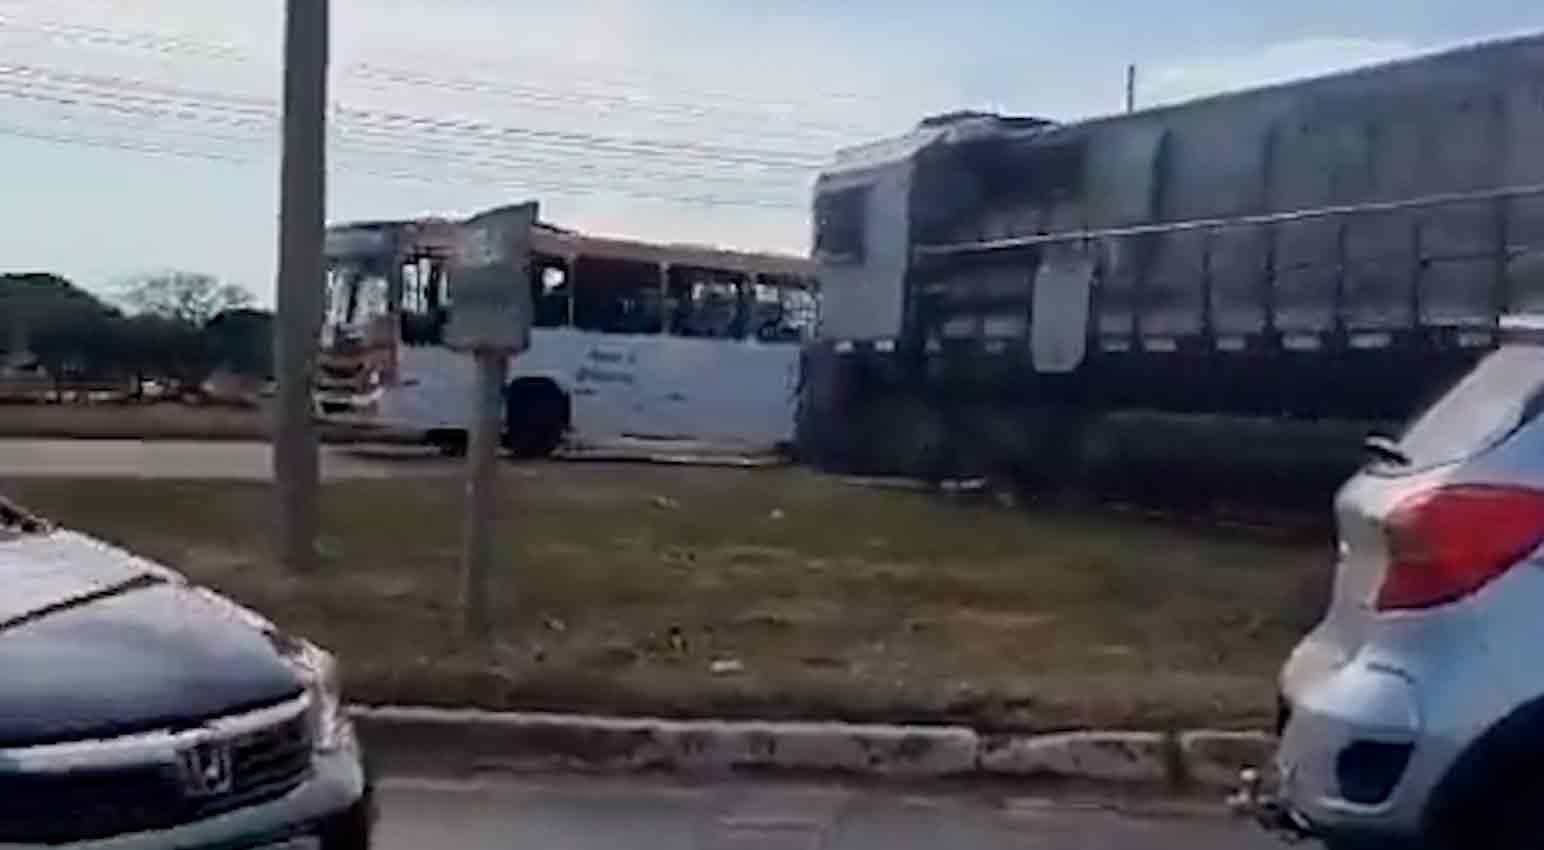 Video mostra il momento esatto della collisione tra un treno merci e un autobus, una persona muore. Foto e video: Twitter @Metropoles